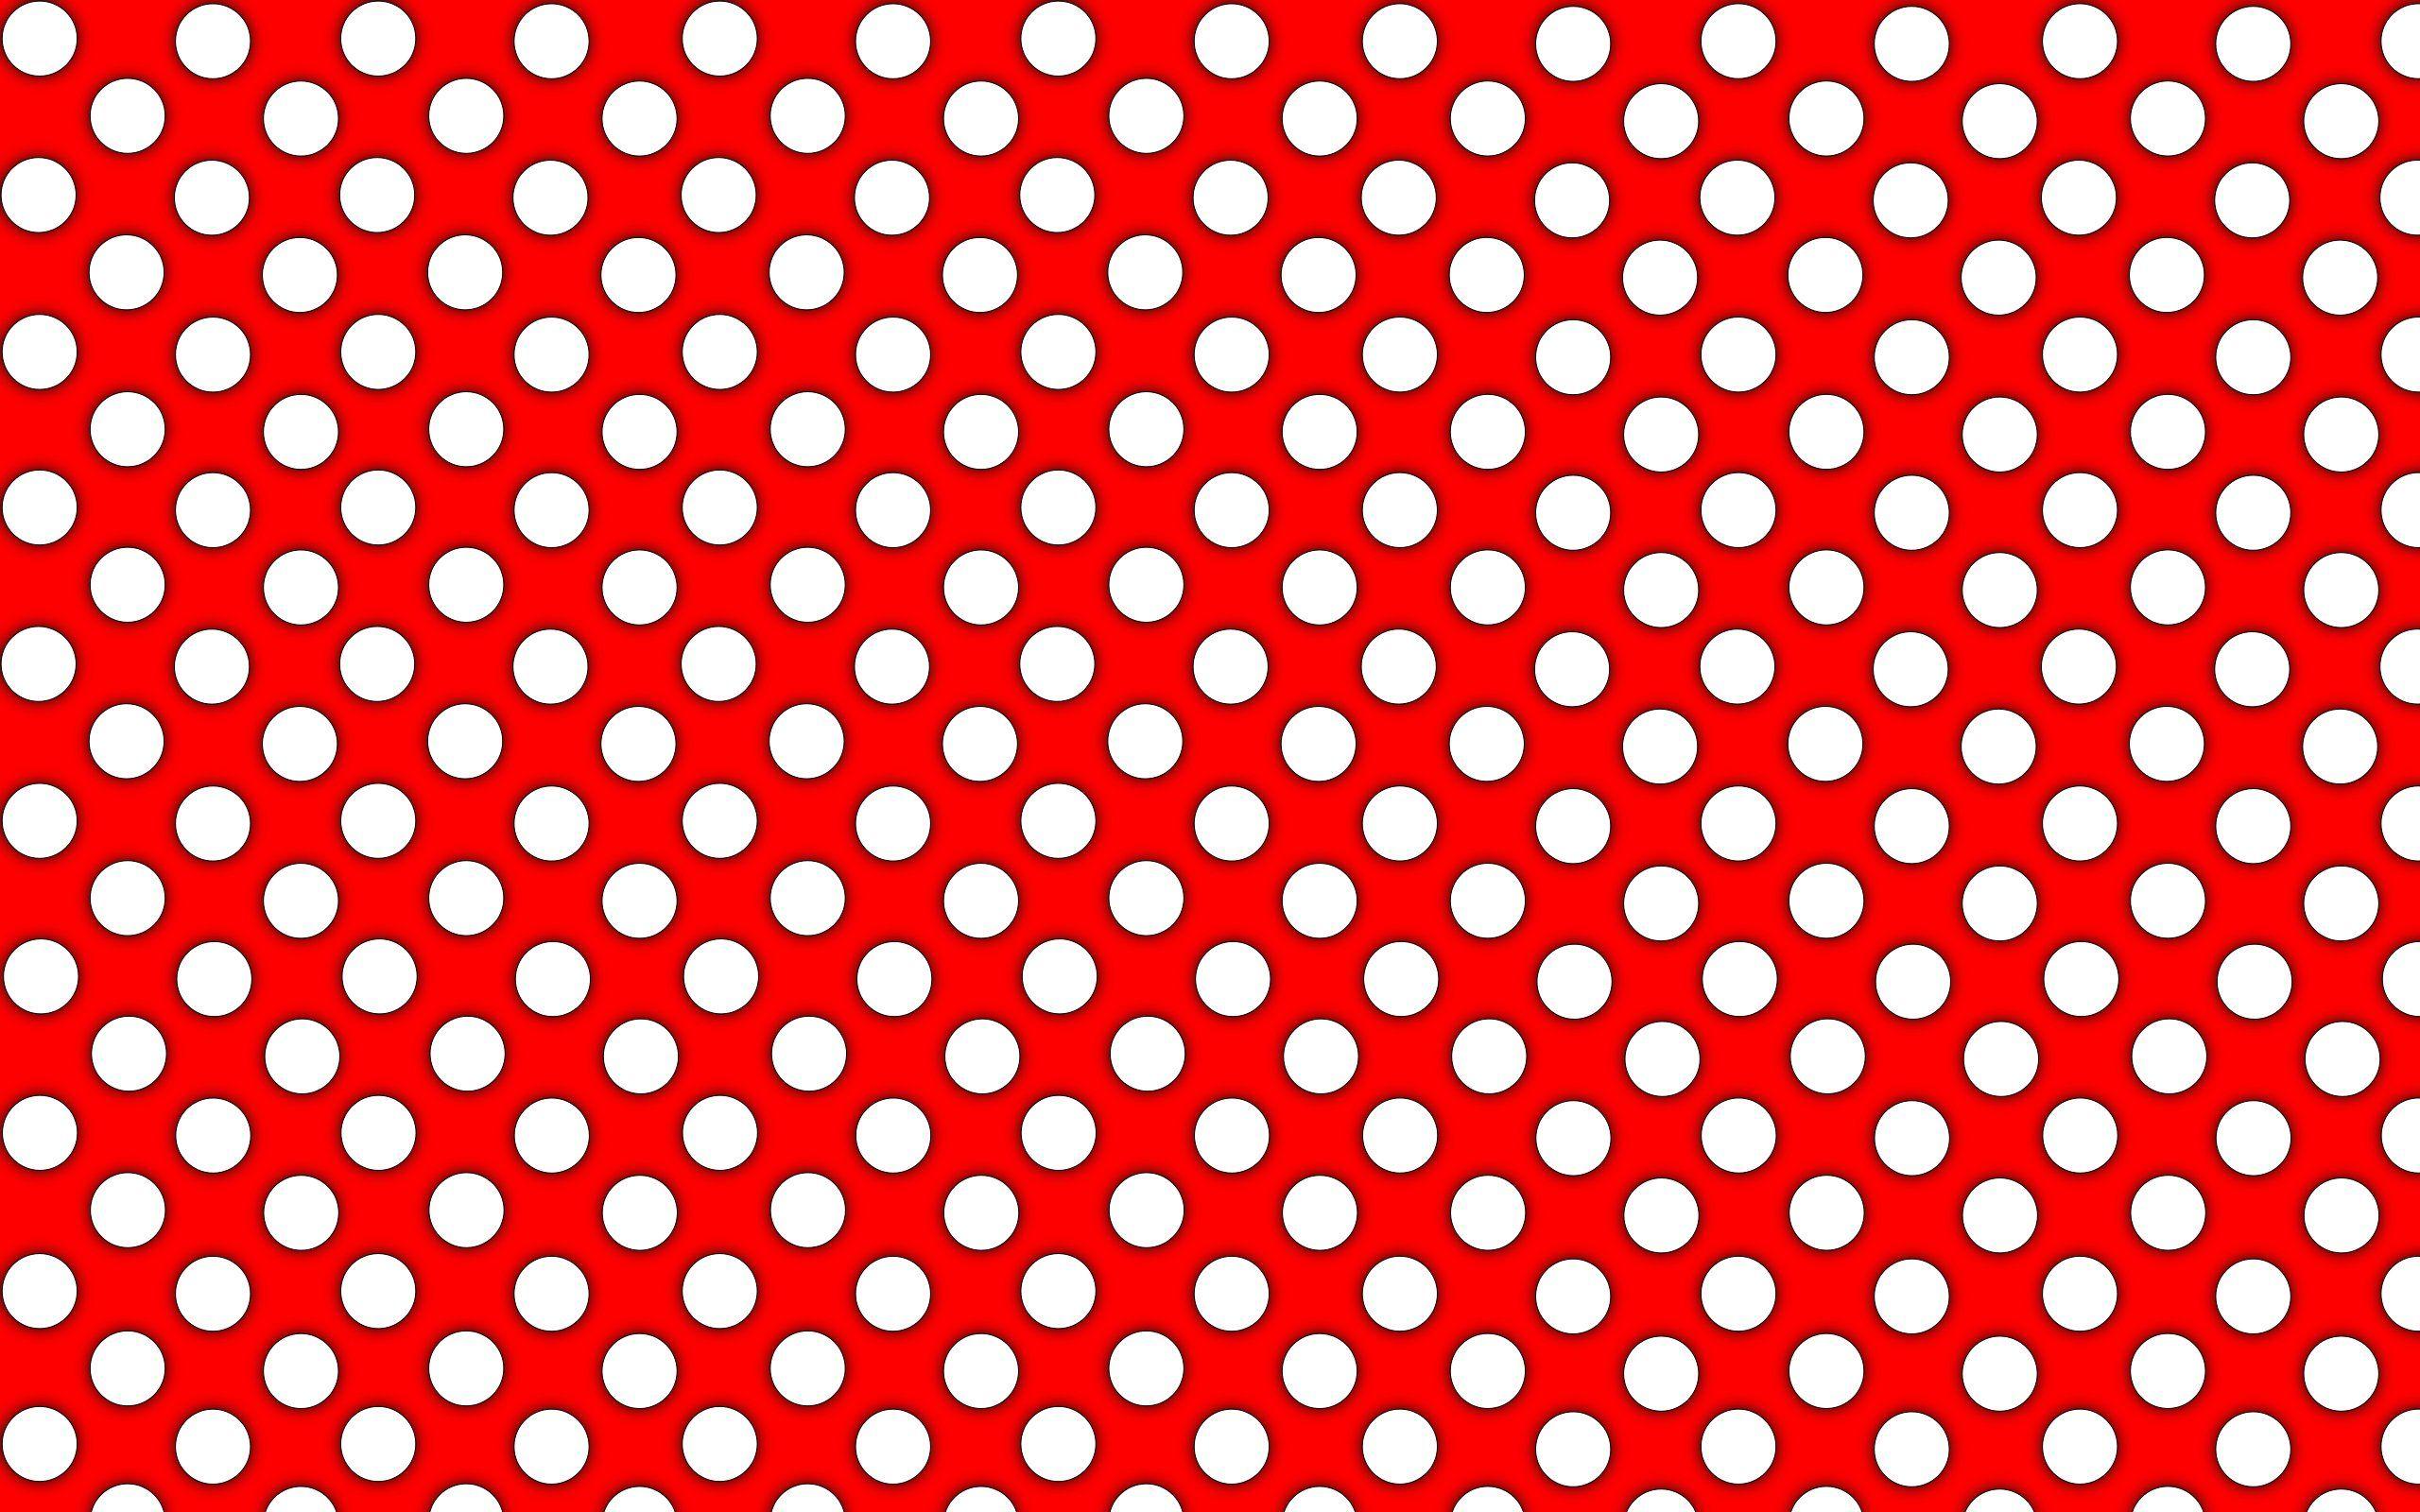 Polka Dot wallpaperx1600